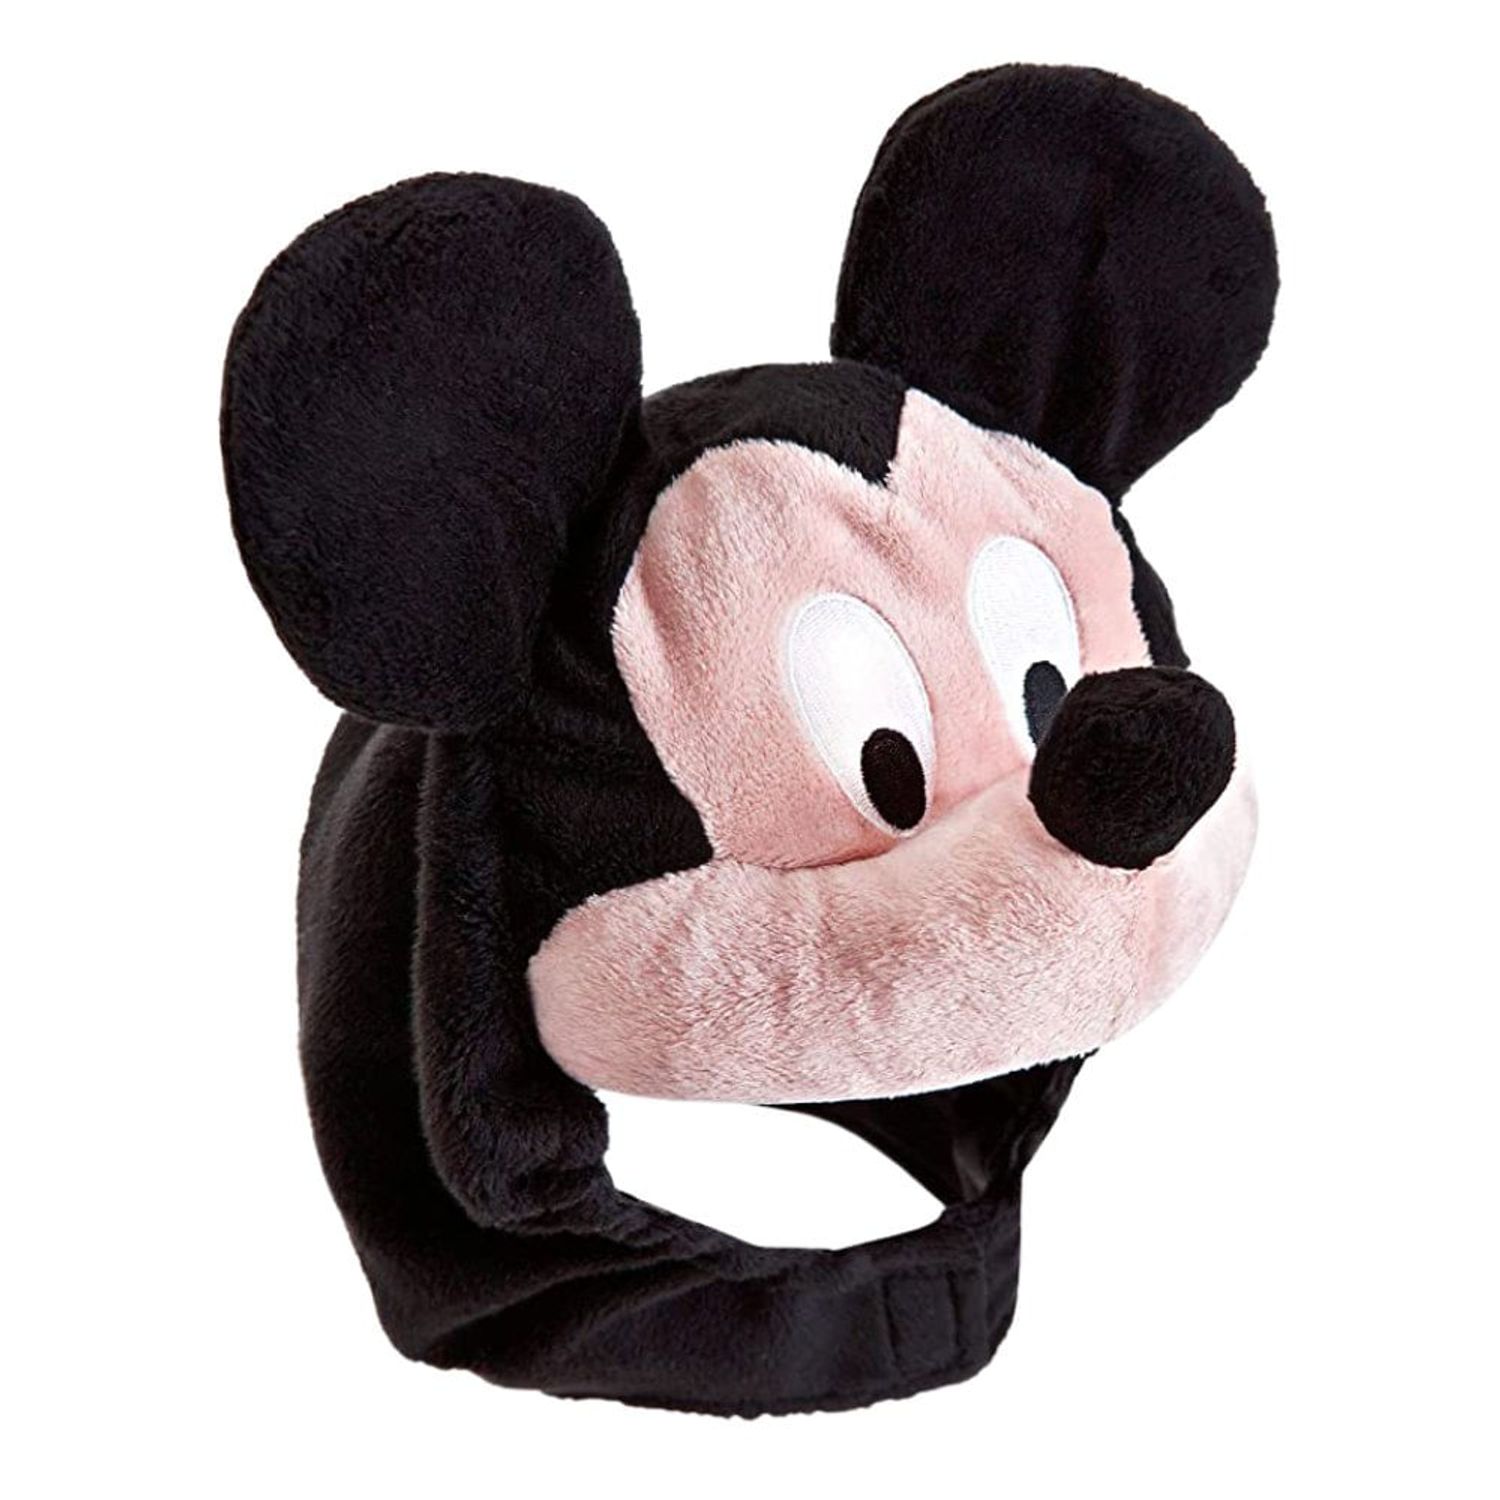 Mi primer disfraz de Mickey Mouse Disney para bebé